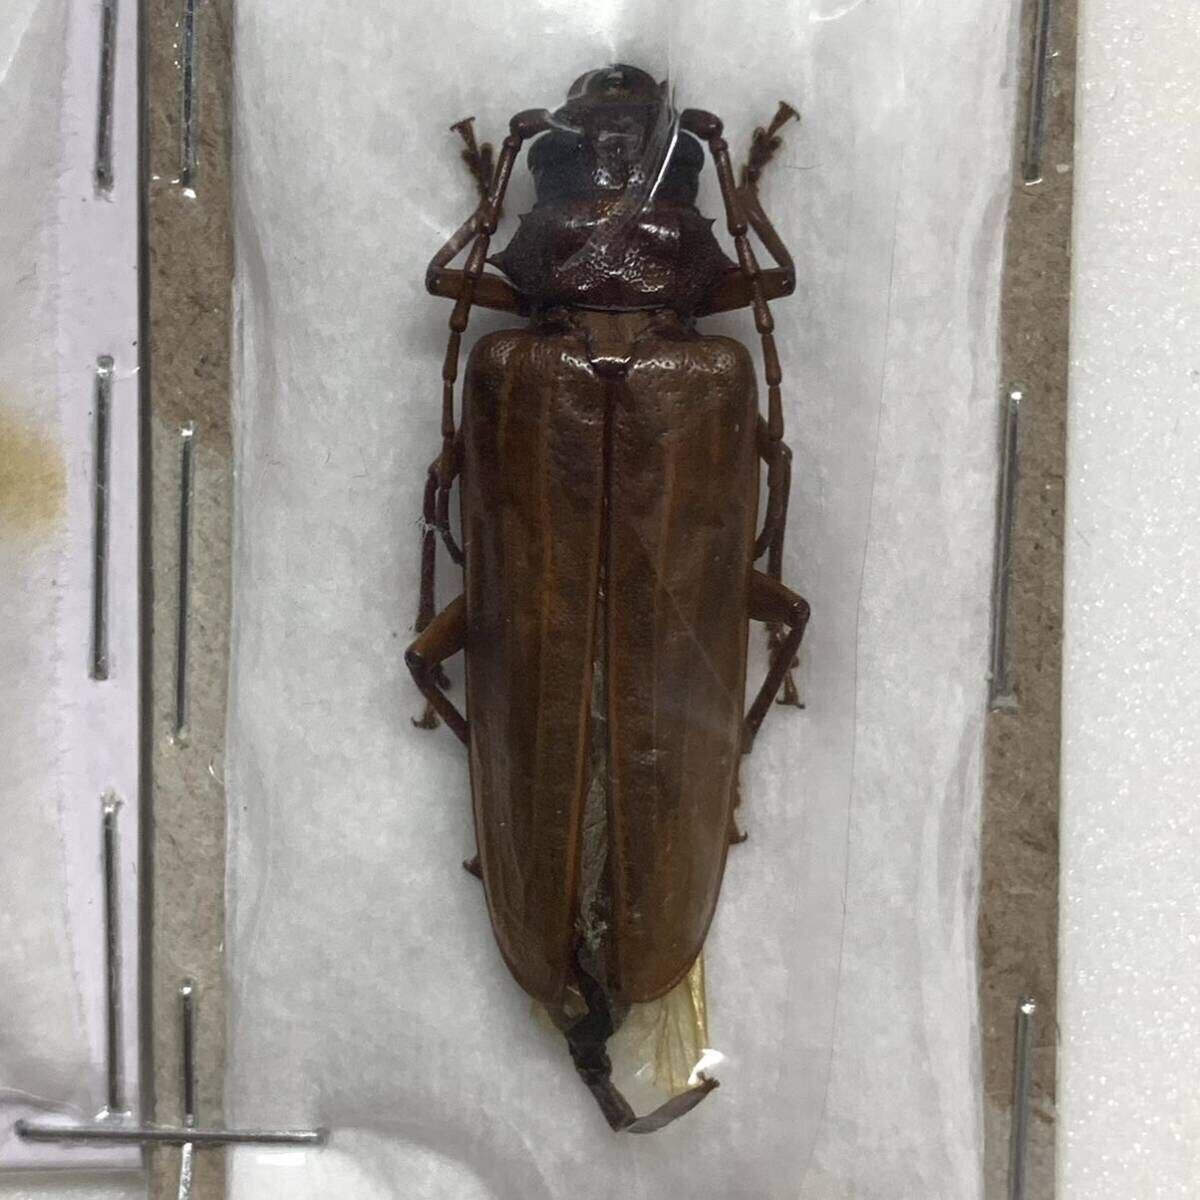 希少 フィジー産 Cacodacnus hebridanus カミキリ ペア 標本 雌雄共に35mm前後 国内での相場無いため1円スタート 昆虫標本 カミキリムシの画像3